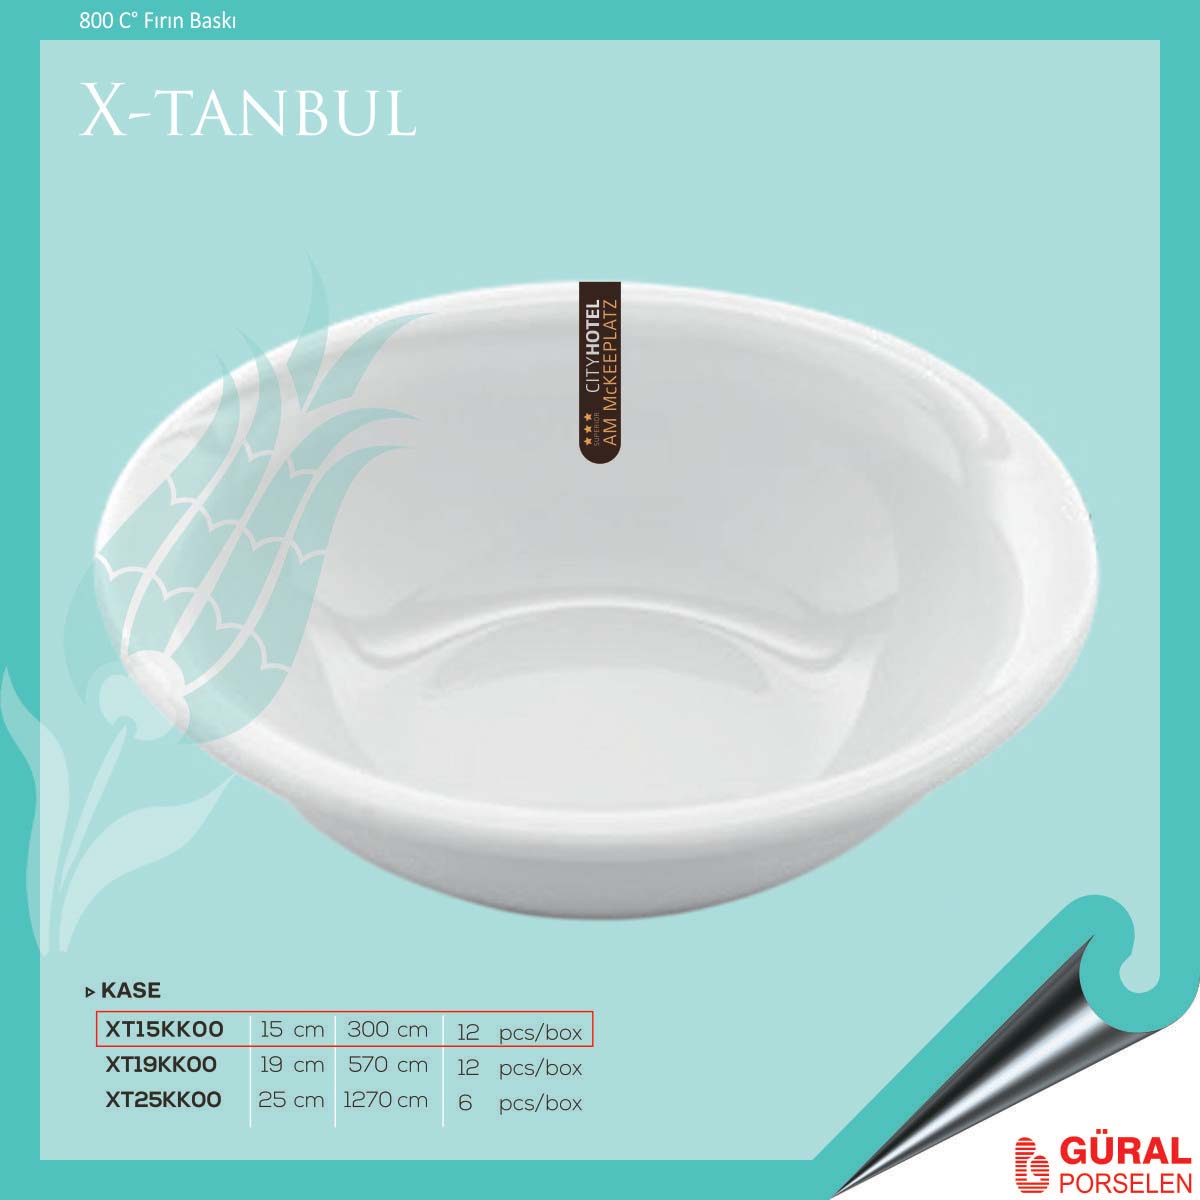 X-tanbul Kase 15 cm